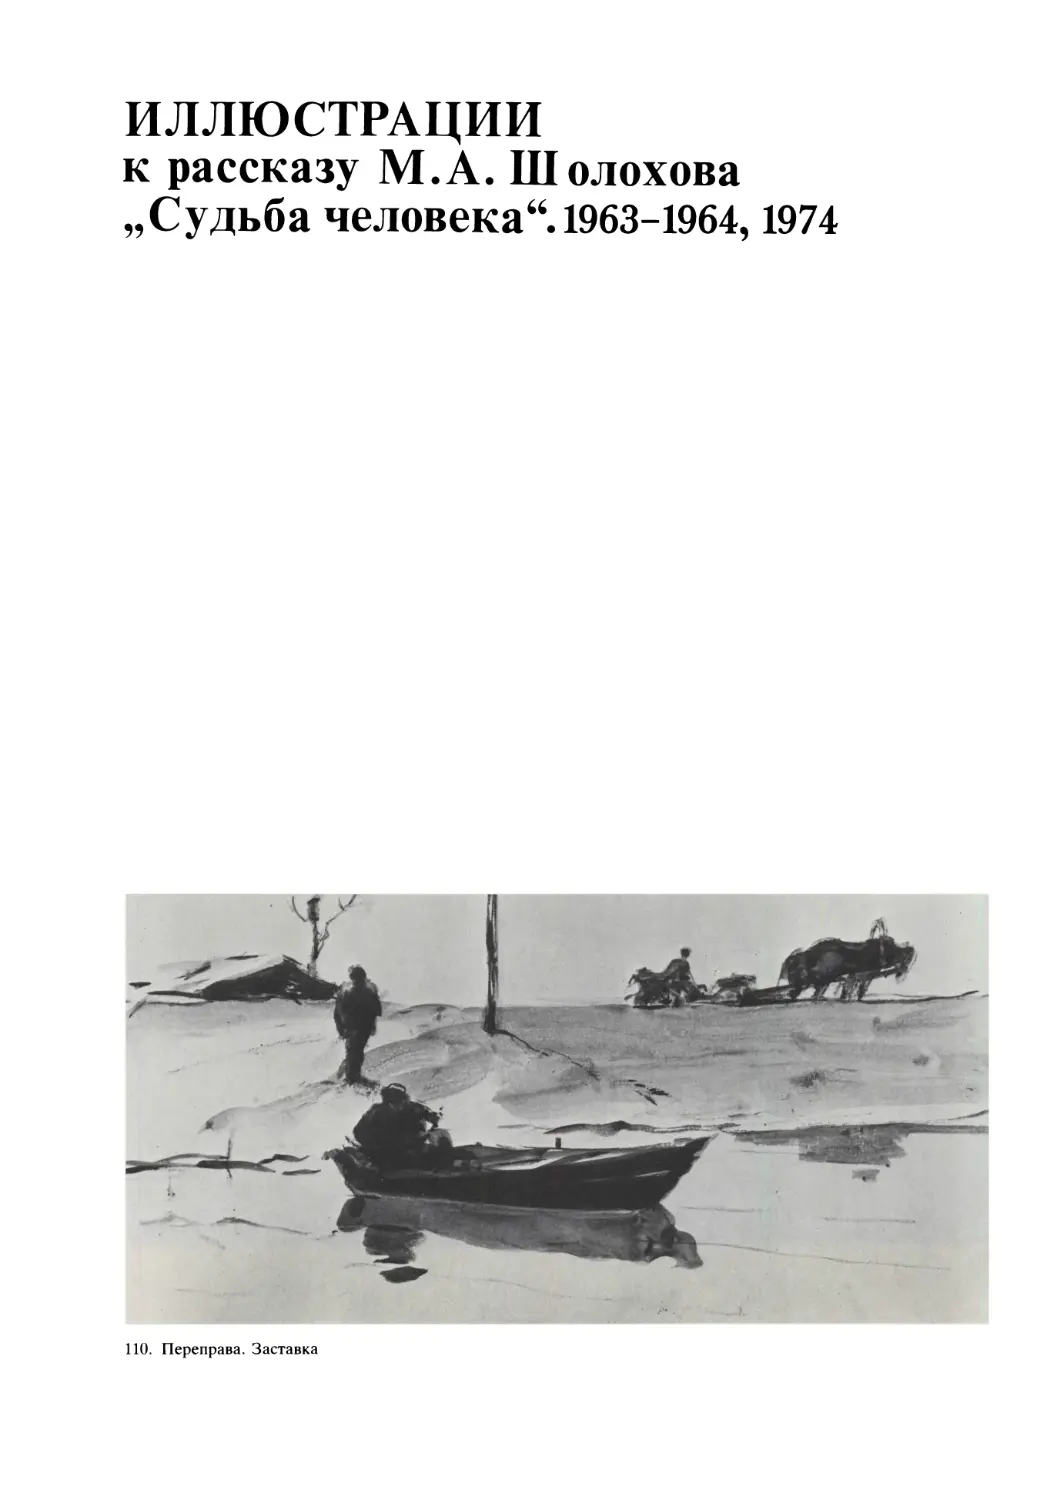 Иллюстрации к рассказу М.А. Шолохова „Судьба человека4“. 1963-1964,1974